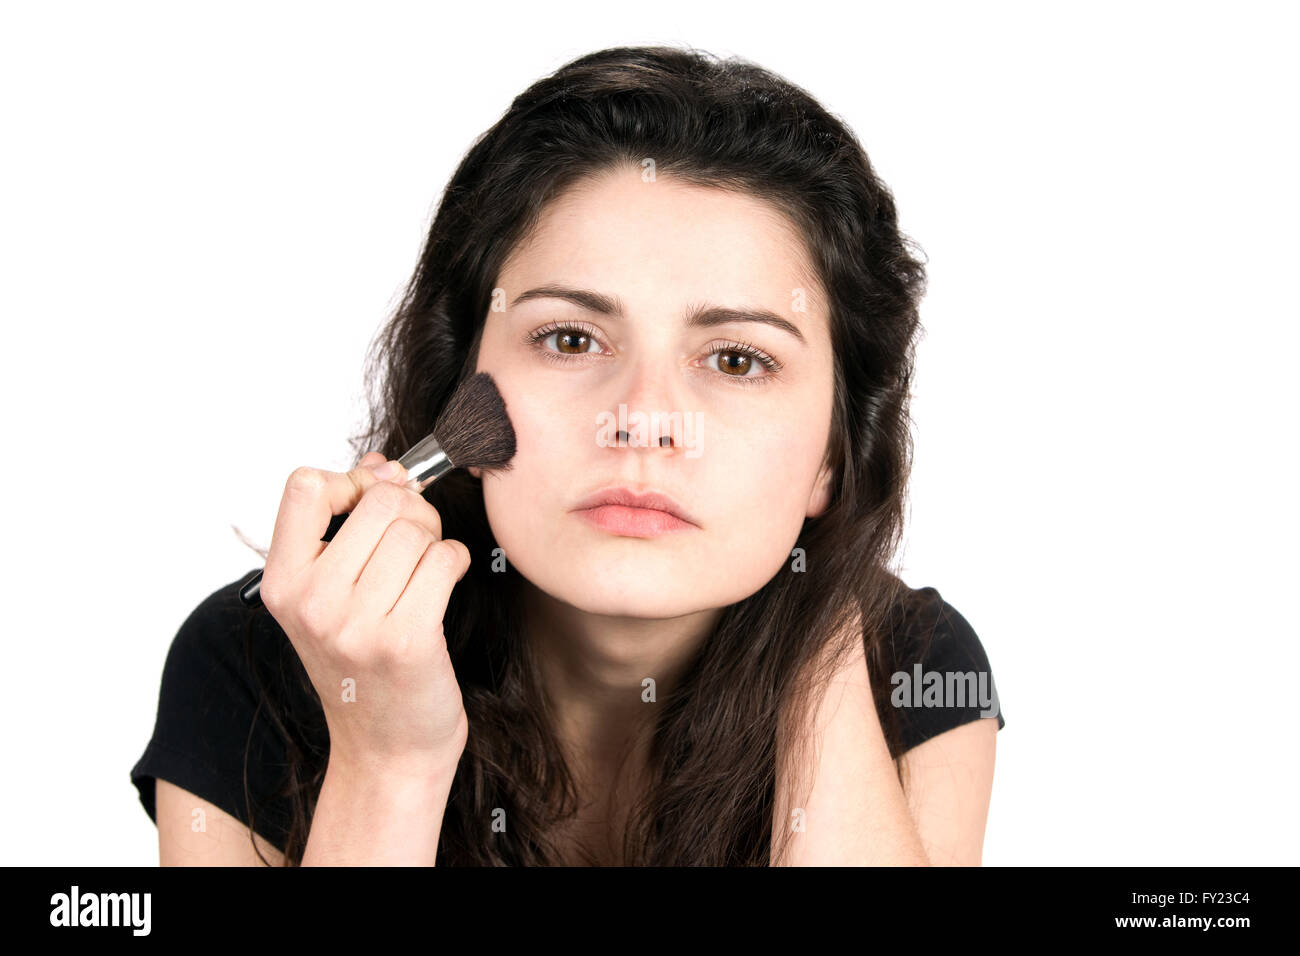 Mujer joven utiliza un cepillo para aplicar cosméticos maquillaje rubor en la cara. Foto de stock